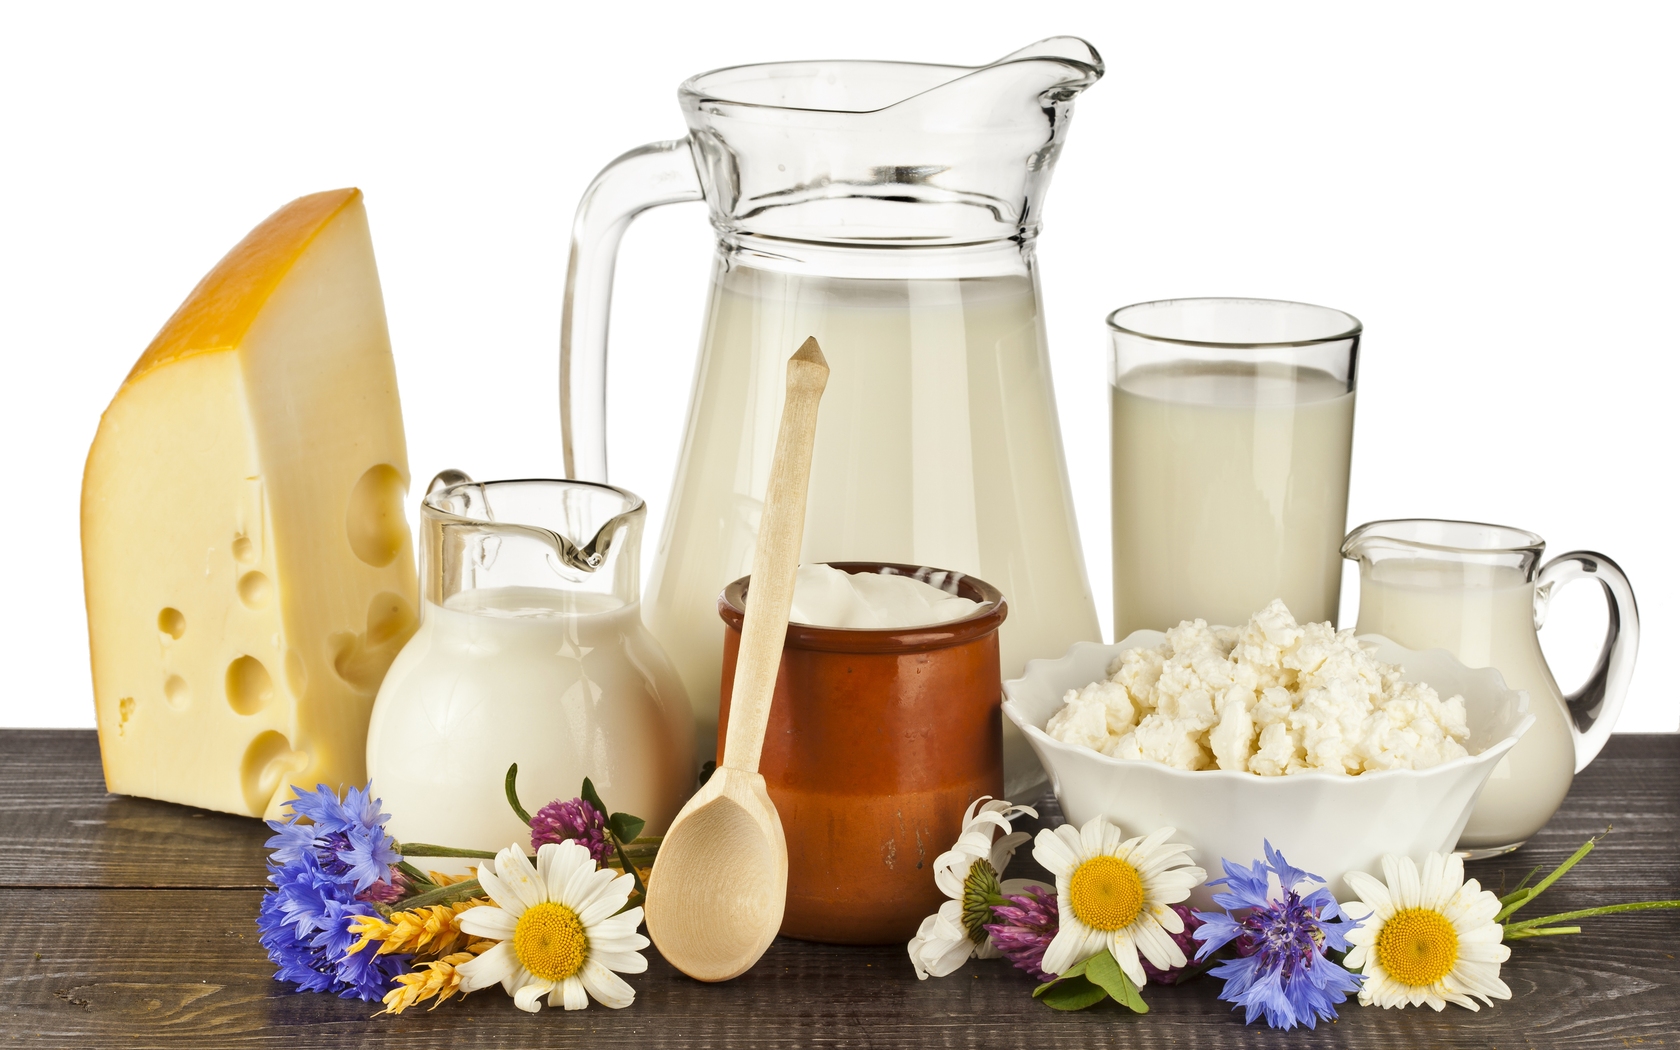 Kiểm nghiệm sữa và các sản phẩm từ sữa - Công Bố Sản Phẩm Thực Phẩm - Uy Tín - Nhanh Chóng - Tiết Kiệm